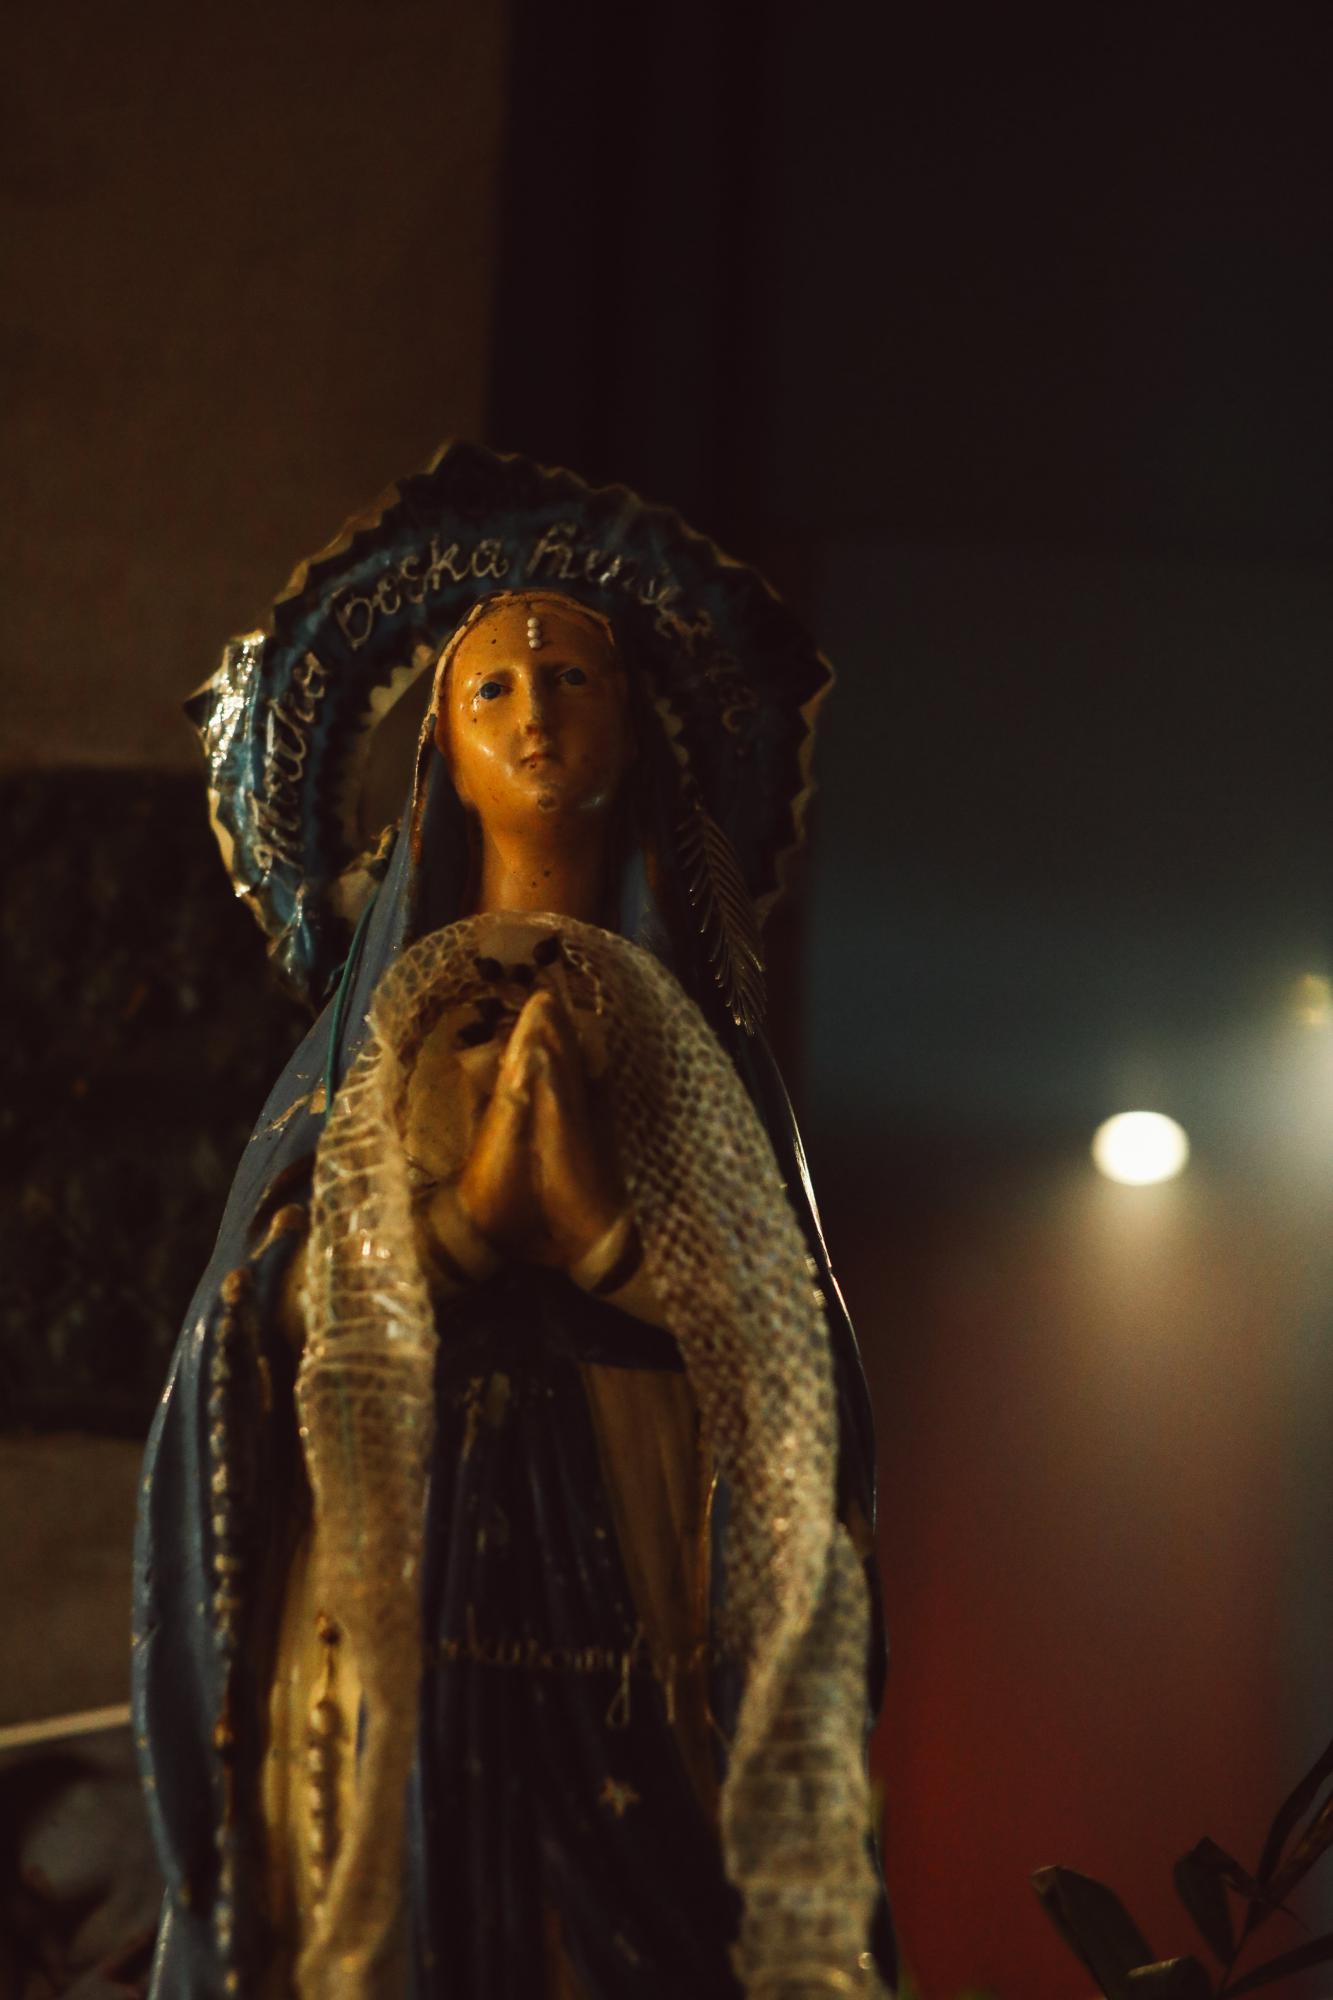 'Op de drempel van de evangelies is Maria dan het ‘heerlijk vat’ dat uit de handen van de Schepper komt.'